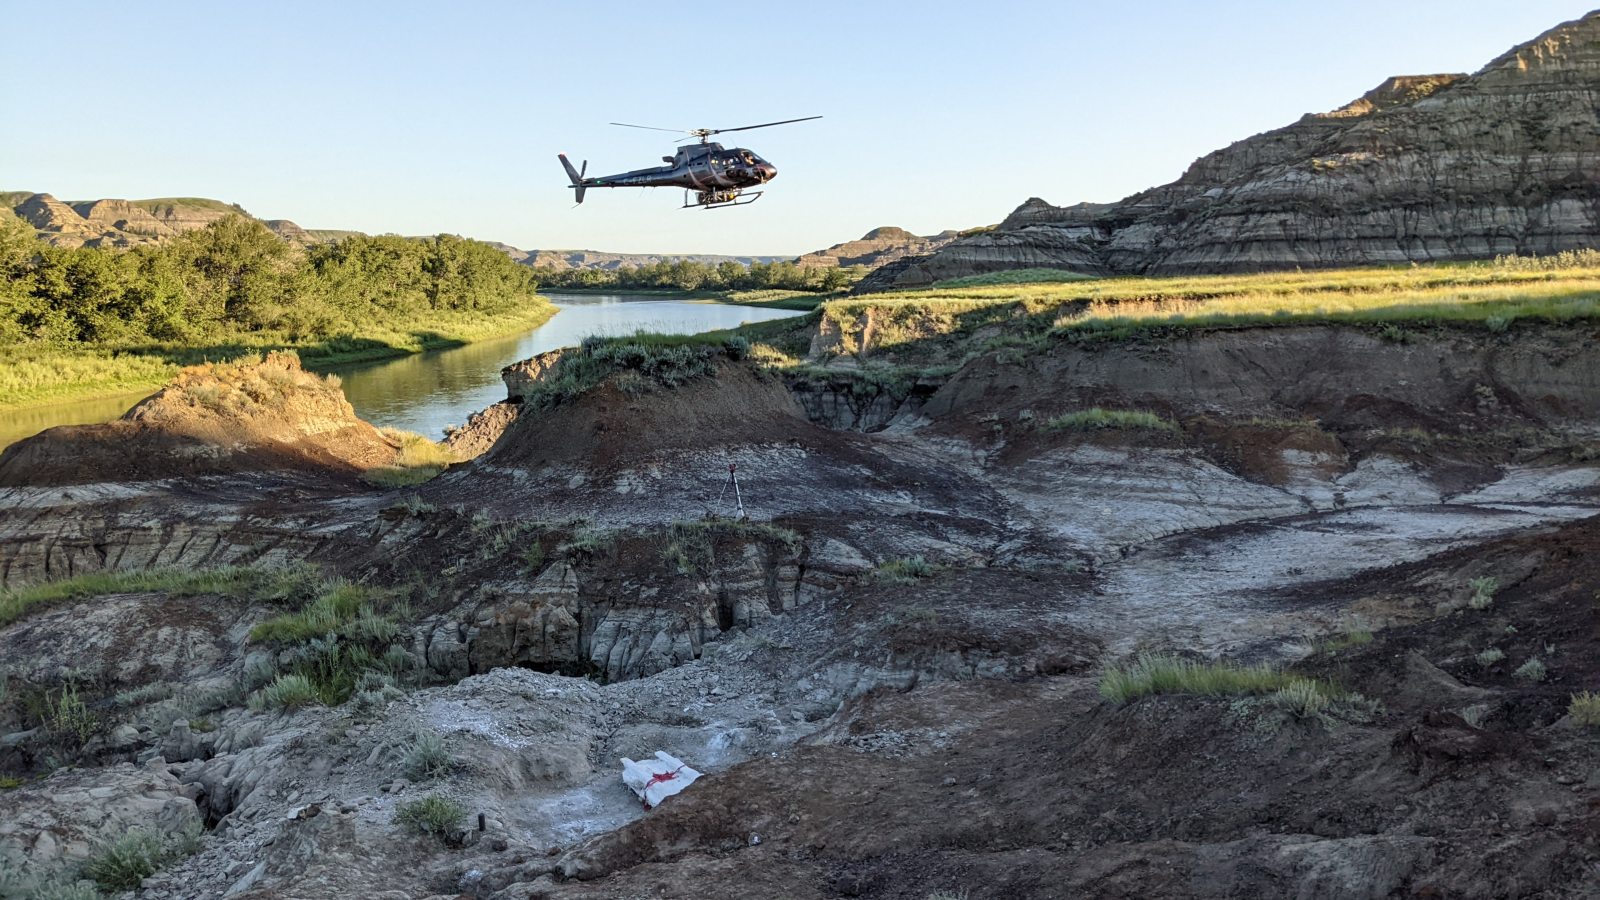 Helicopter flies above dinosaur specimen near Morrin, Alta.